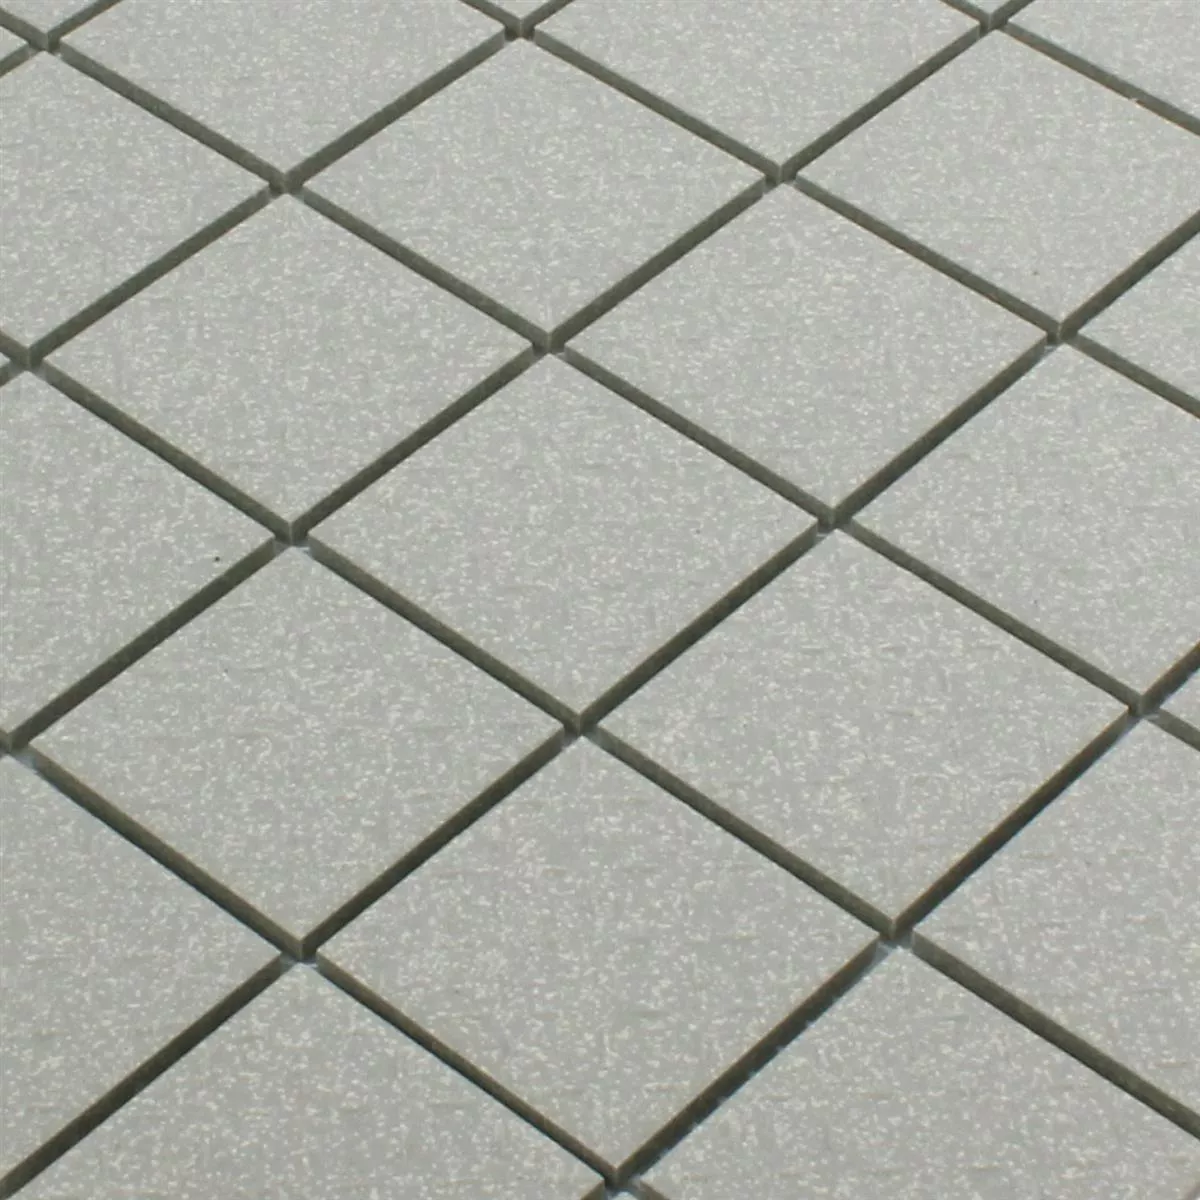 Sample Mosaic Tiles Ceramic Grey Mat R11